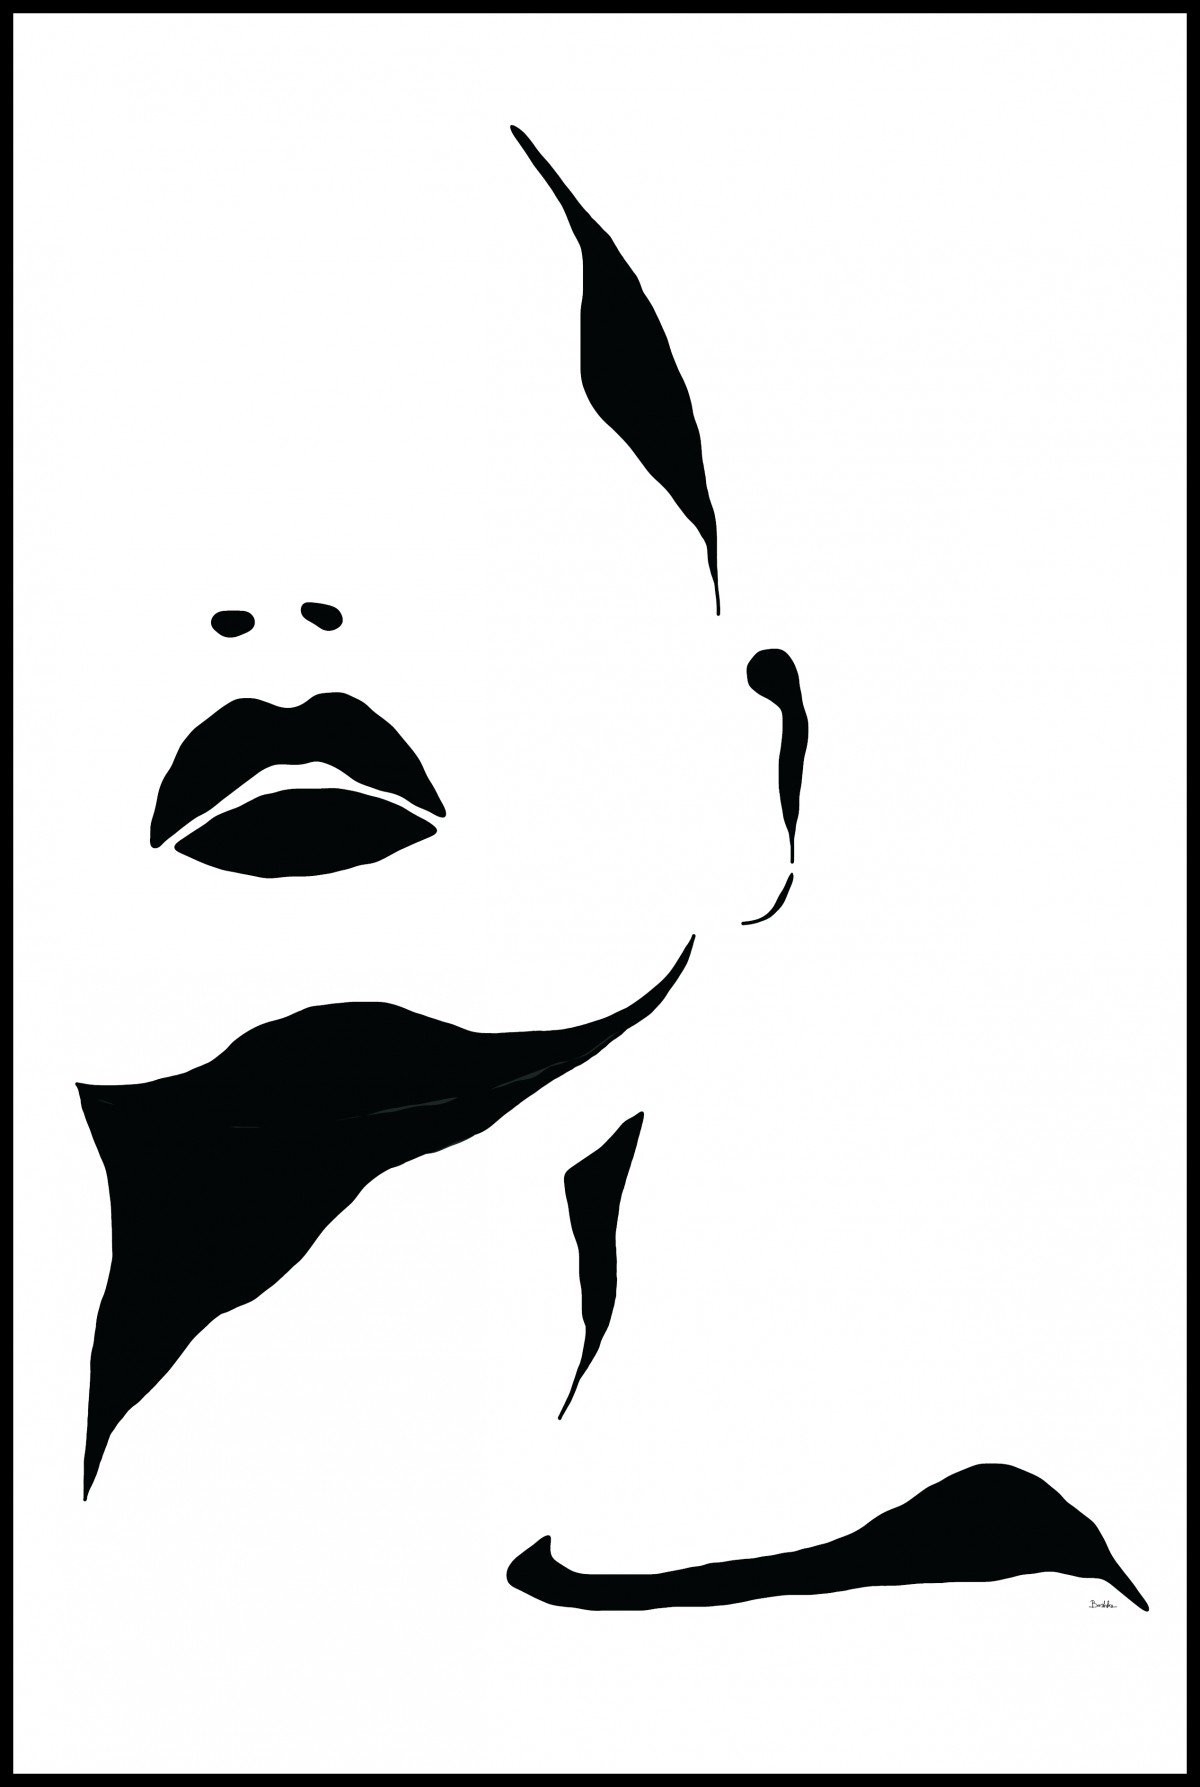 Kobieta - grafika czarno-biała, plik cyfrowy do pobrania, wydrukuj jak chcesz